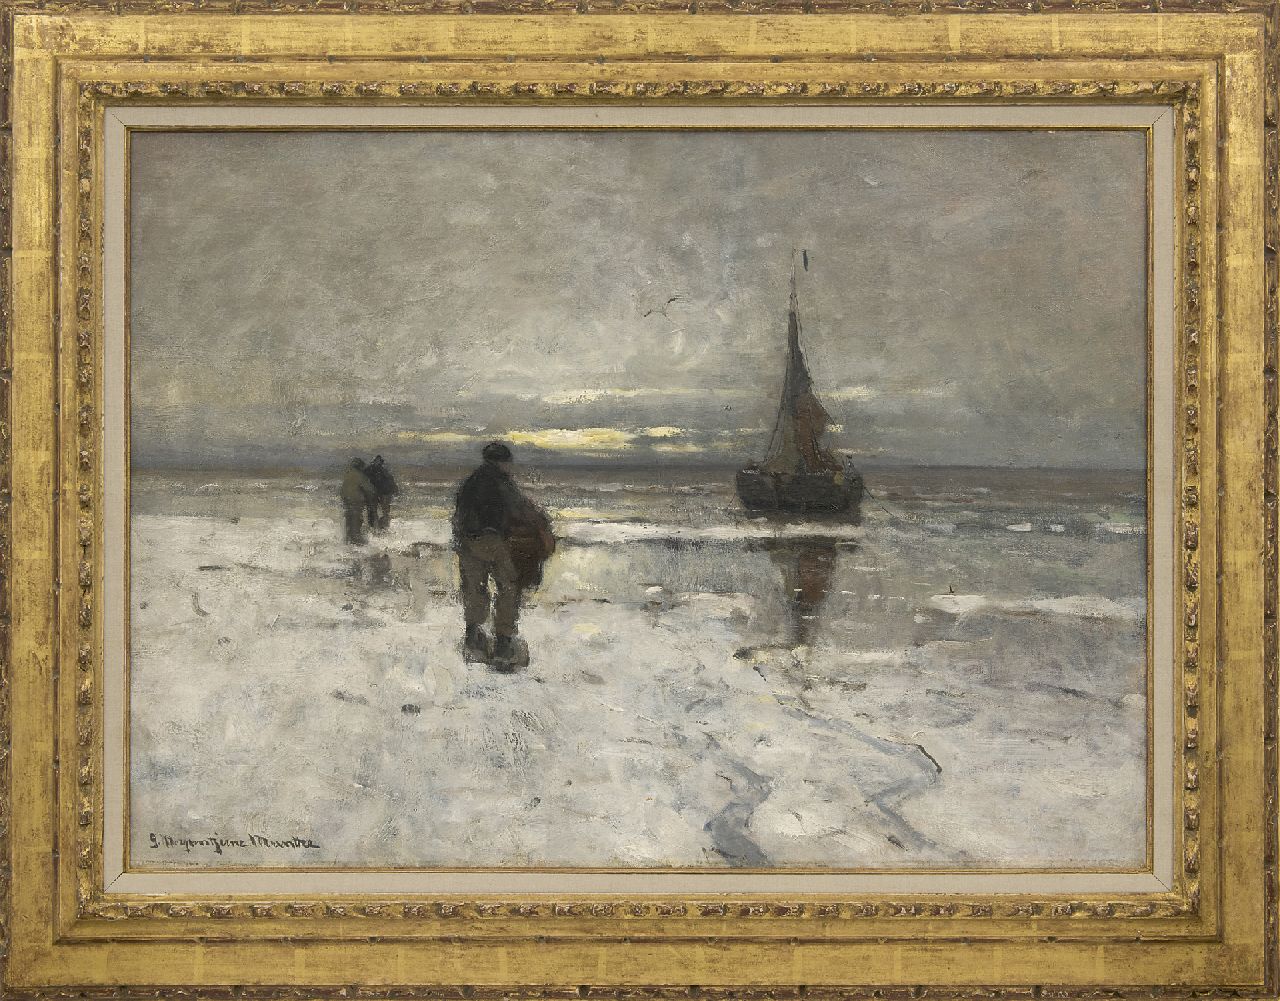 Munthe G.A.L.  | Gerhard Arij Ludwig 'Morgenstjerne' Munthe | Schilderijen te koop aangeboden | Het strand bij winter, olieverf op doek 54,0 x 75,1 cm, gesigneerd linksonder